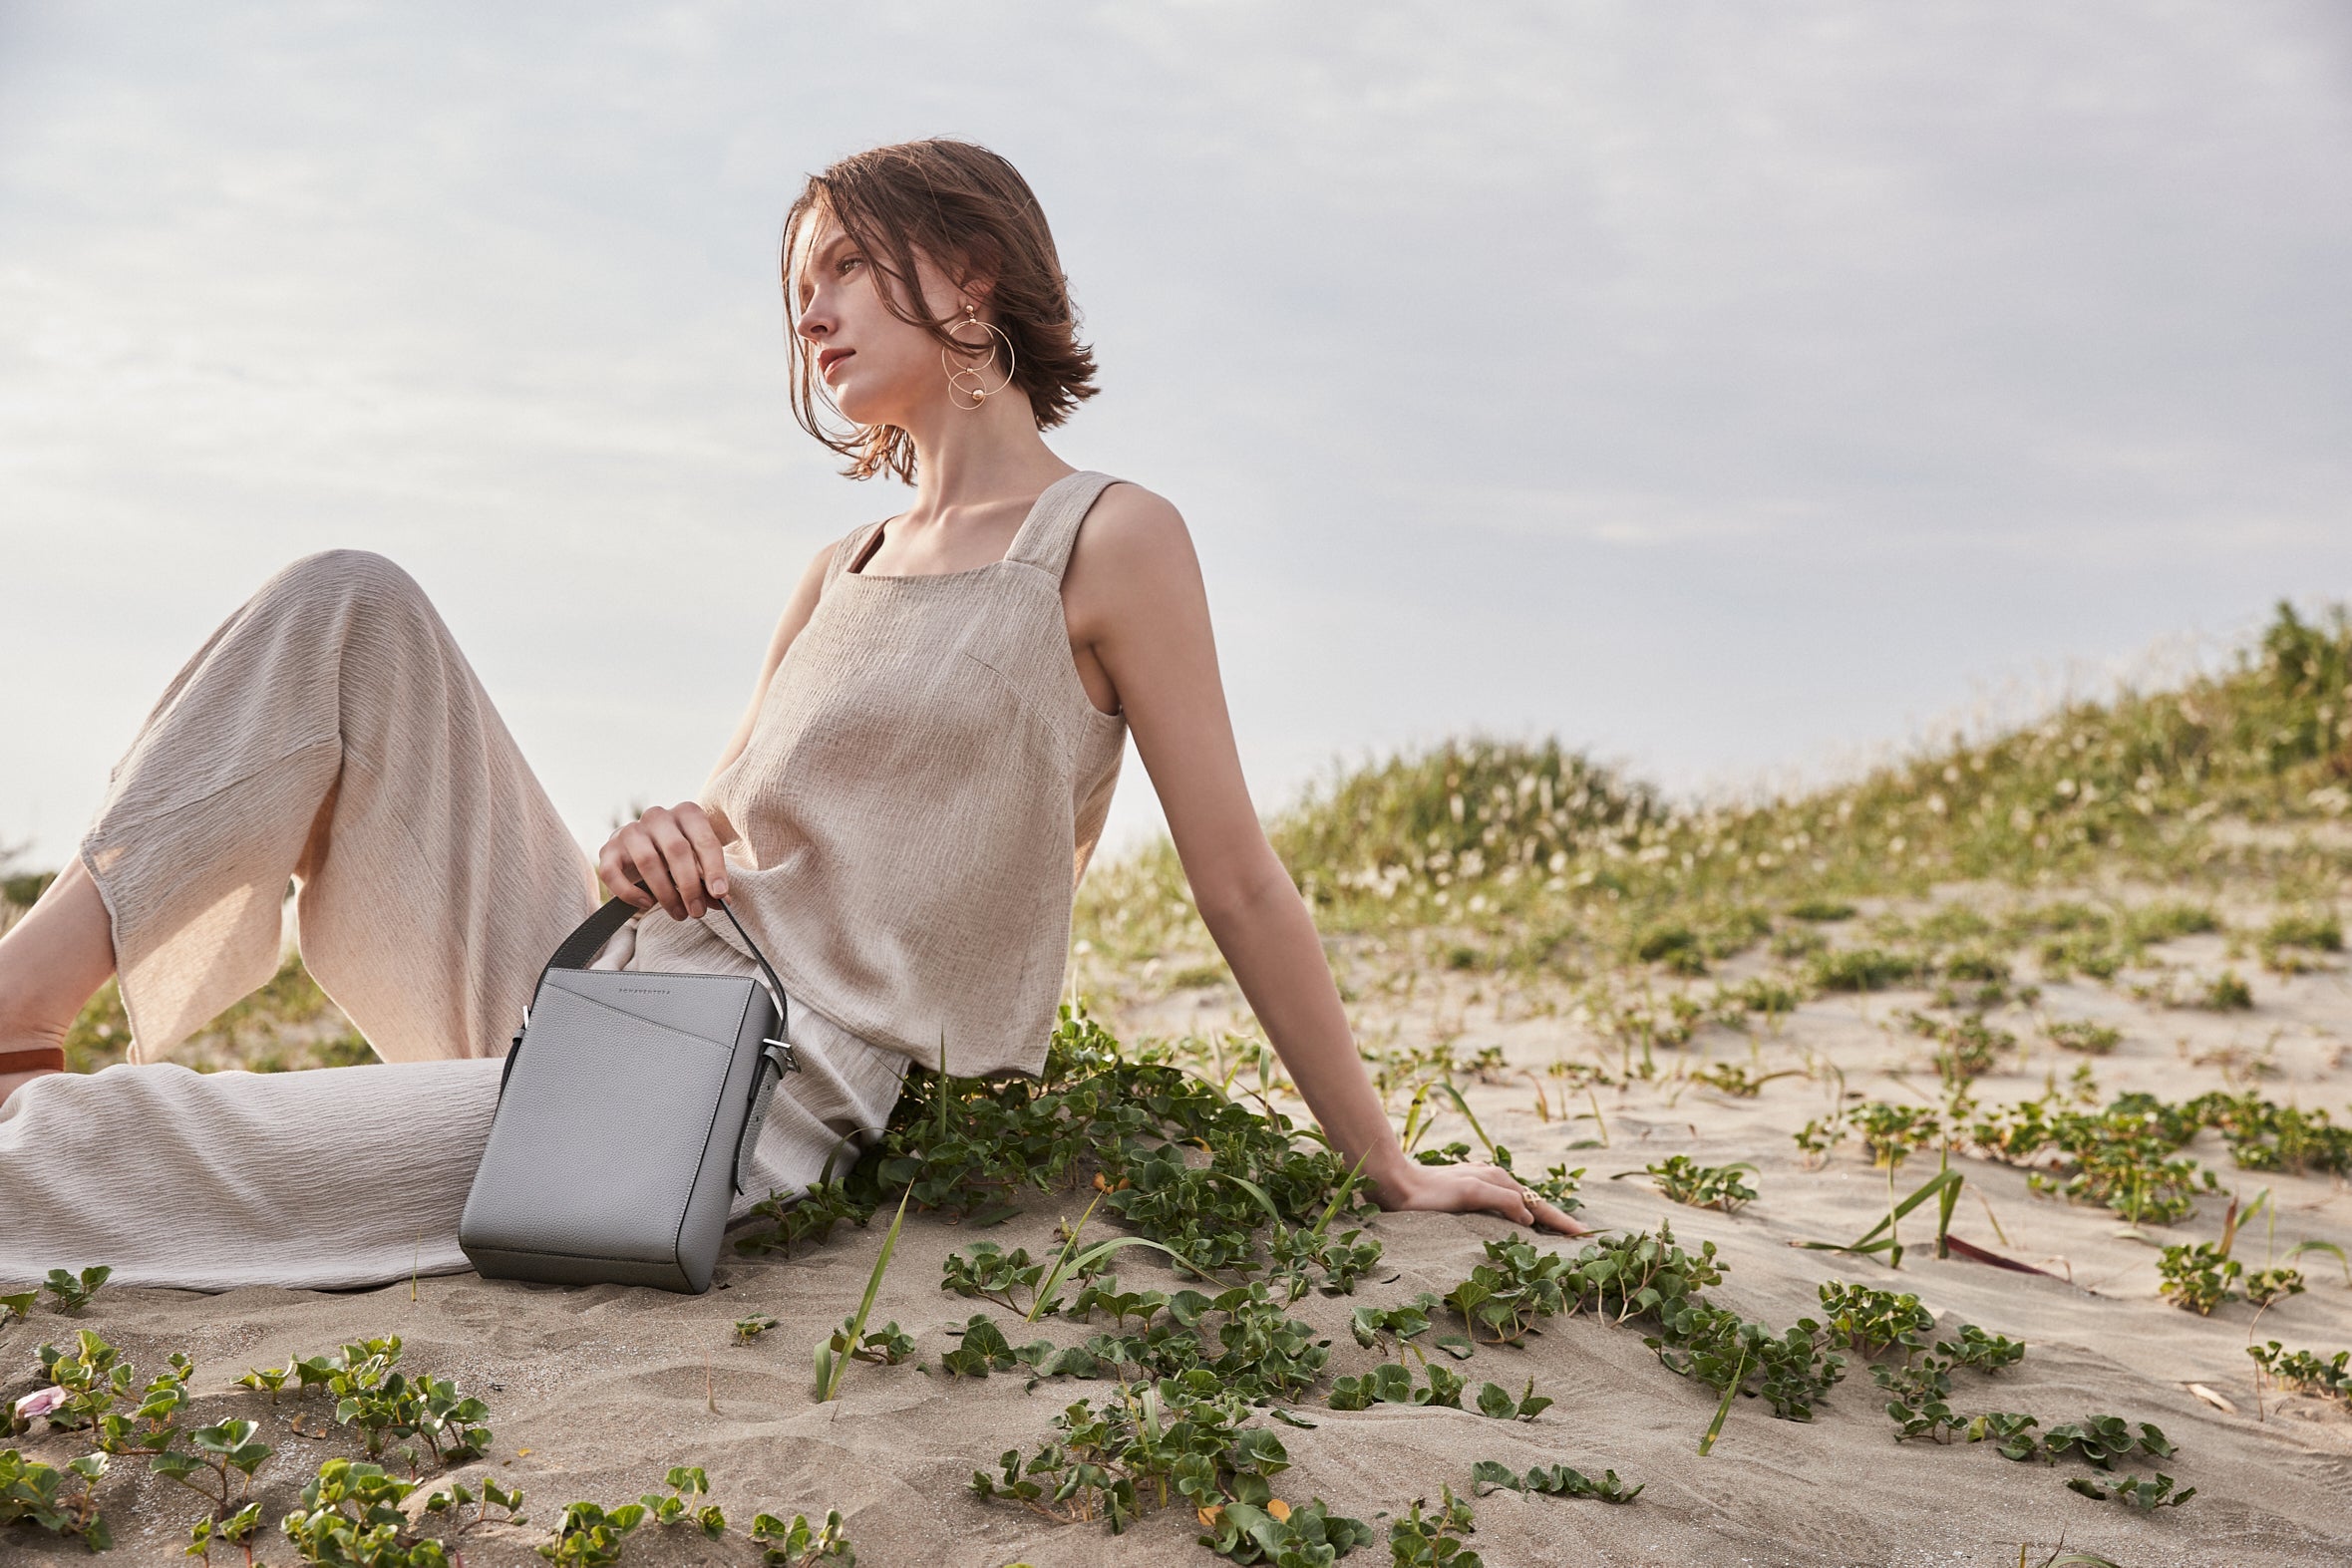 Stylowa kobieta nosi zrównoważoną torebkę BONAVENTURA wykonaną z pełnoziarnistej skóry podczas wycieczki na plażę.